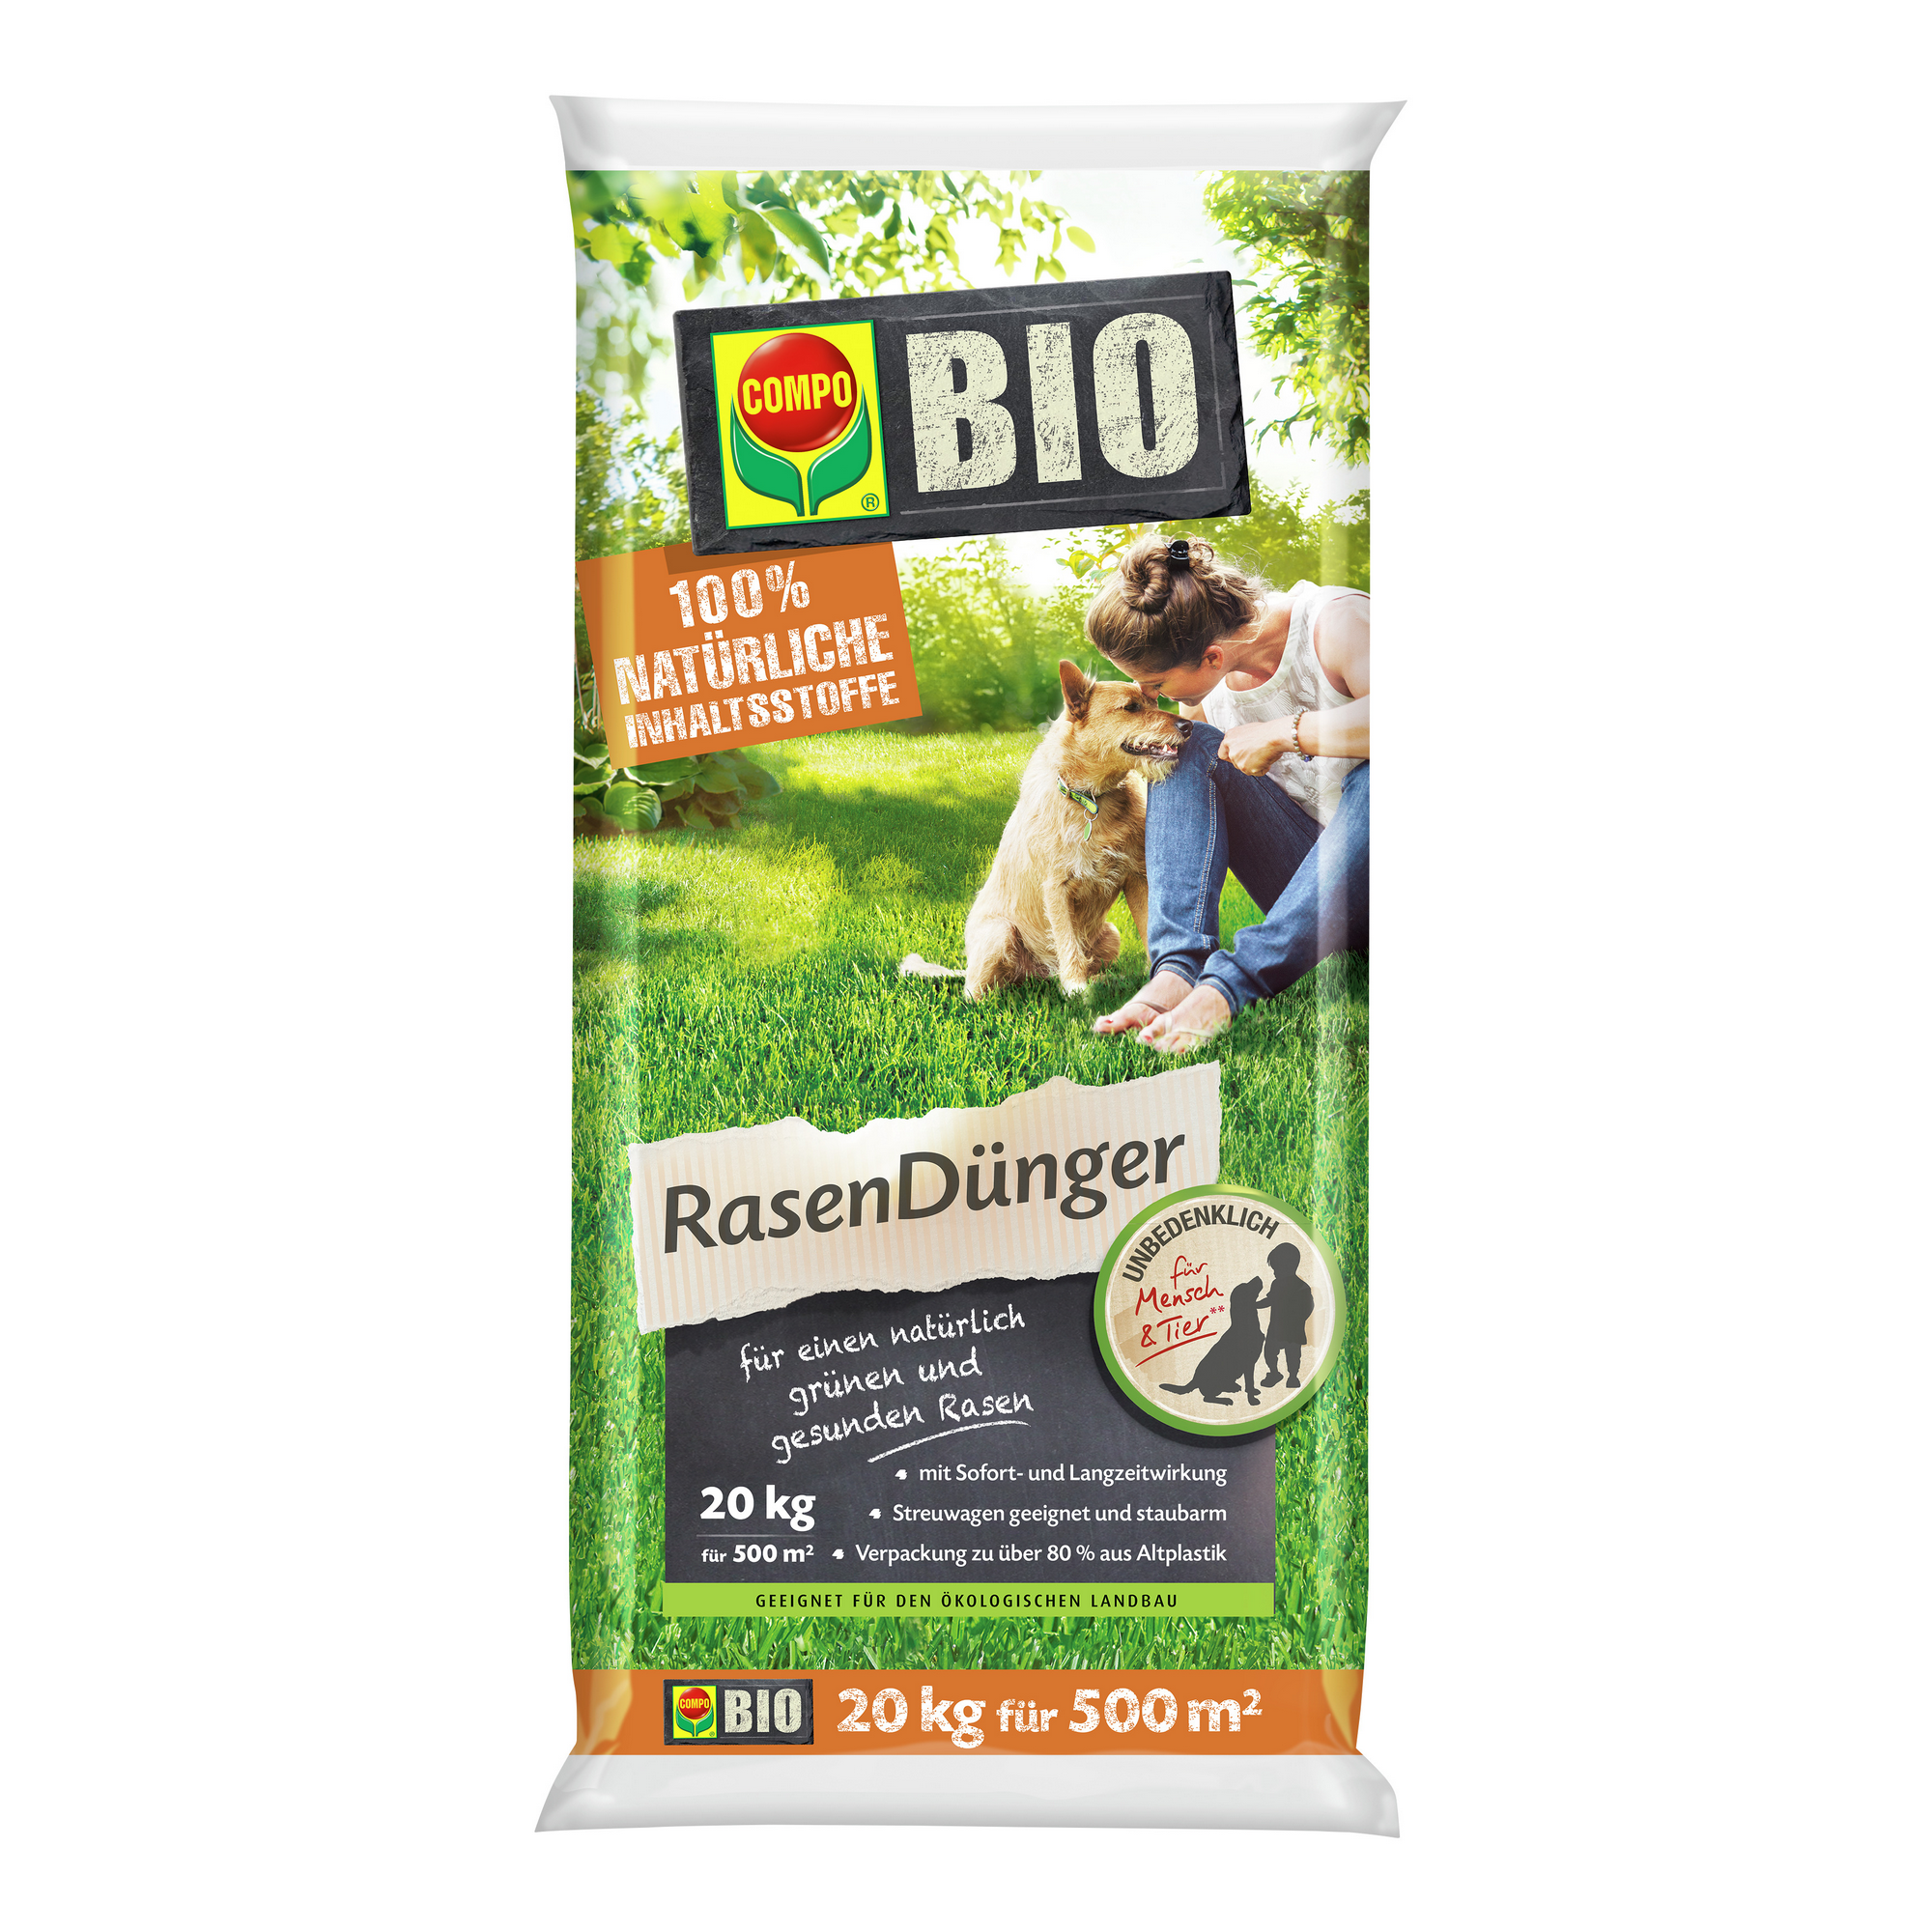 Bio-Rasendünger 20 kg für 500 m² + product picture